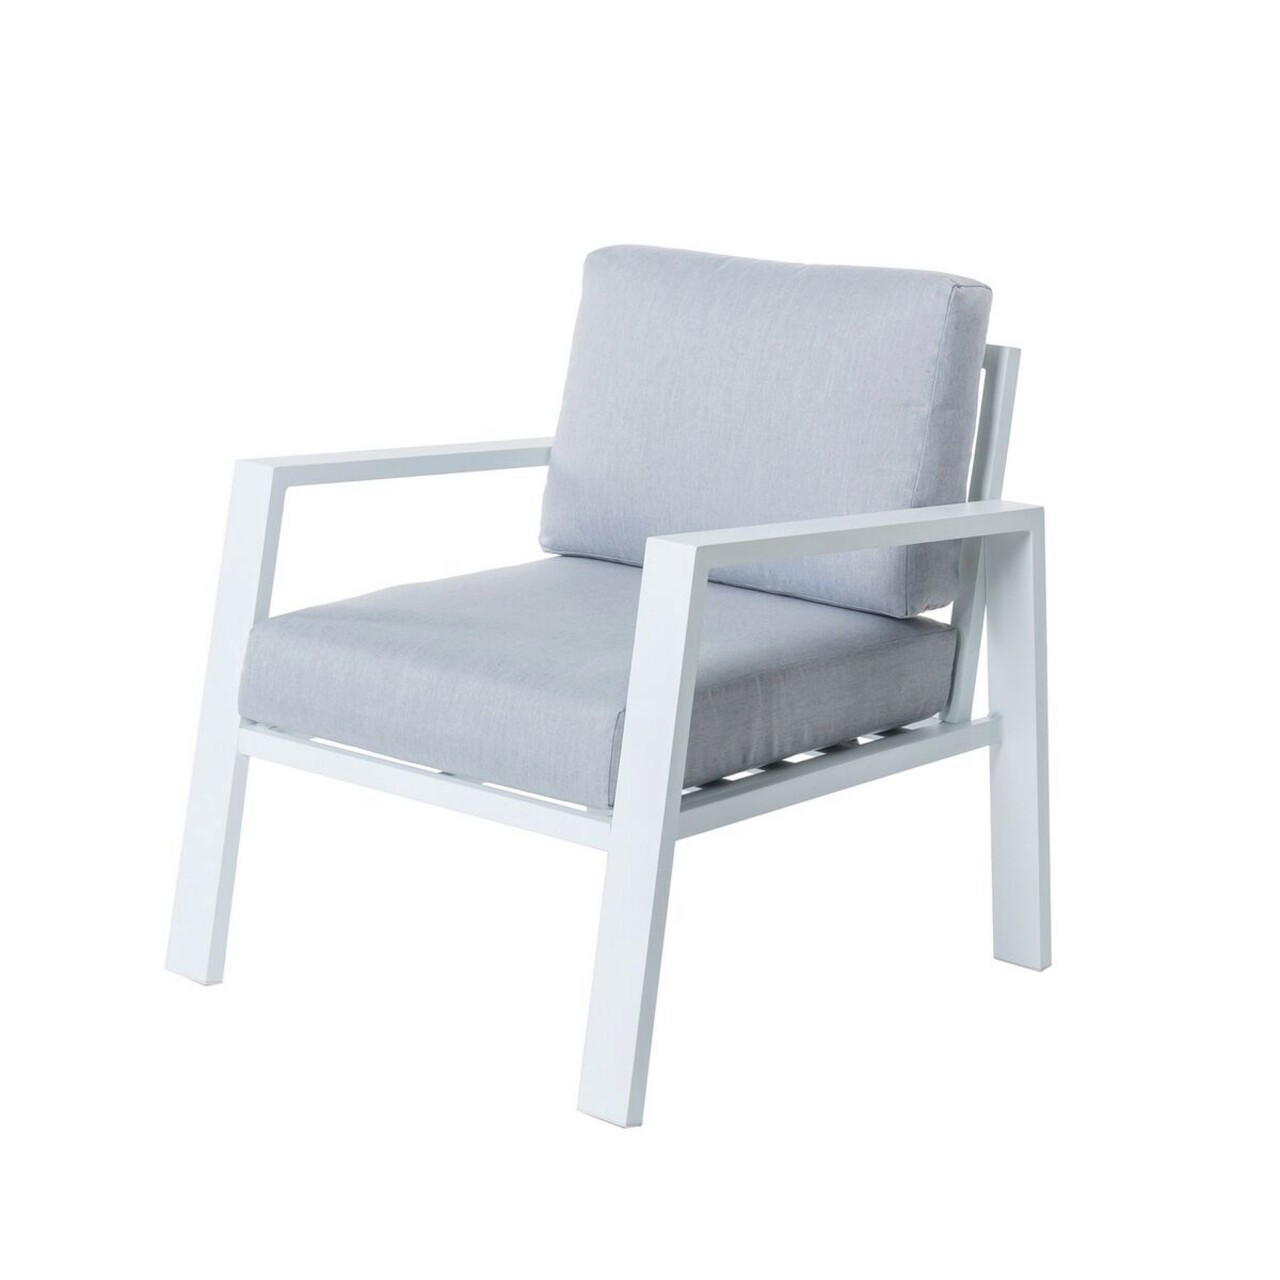 Thais Kerti fotel, 73.2 x 74.8 x 73.3 cm, alumínium/poliészter, fehér